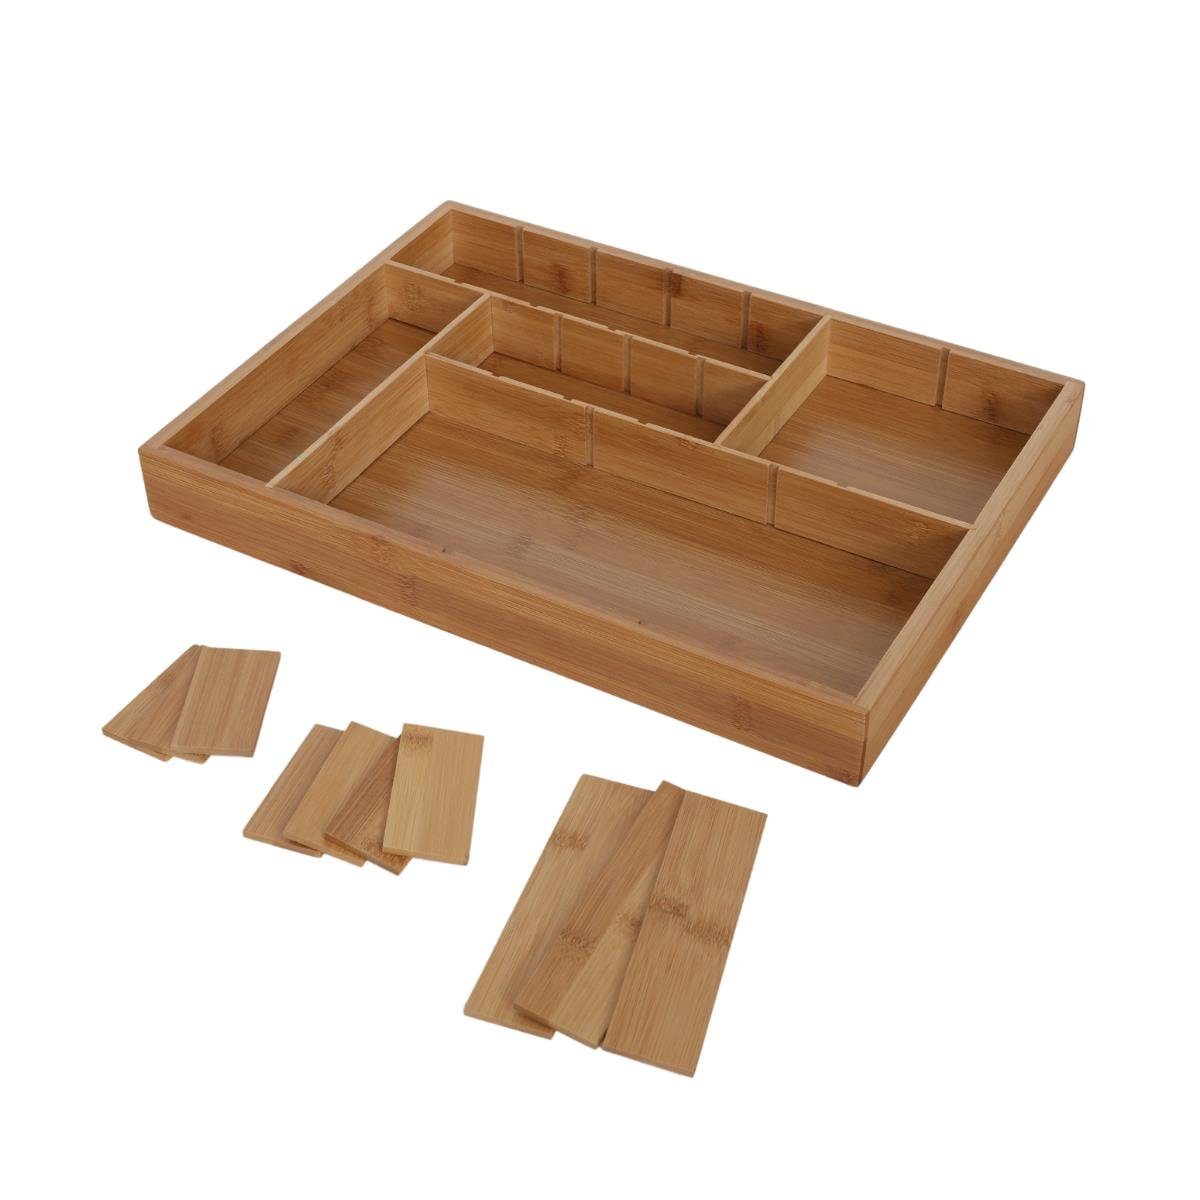 Organizer oder Terra Organizer Für 44x32x5 cm, Besteckkasten Schublade Home als besteck Besteckeinsatz Bambus